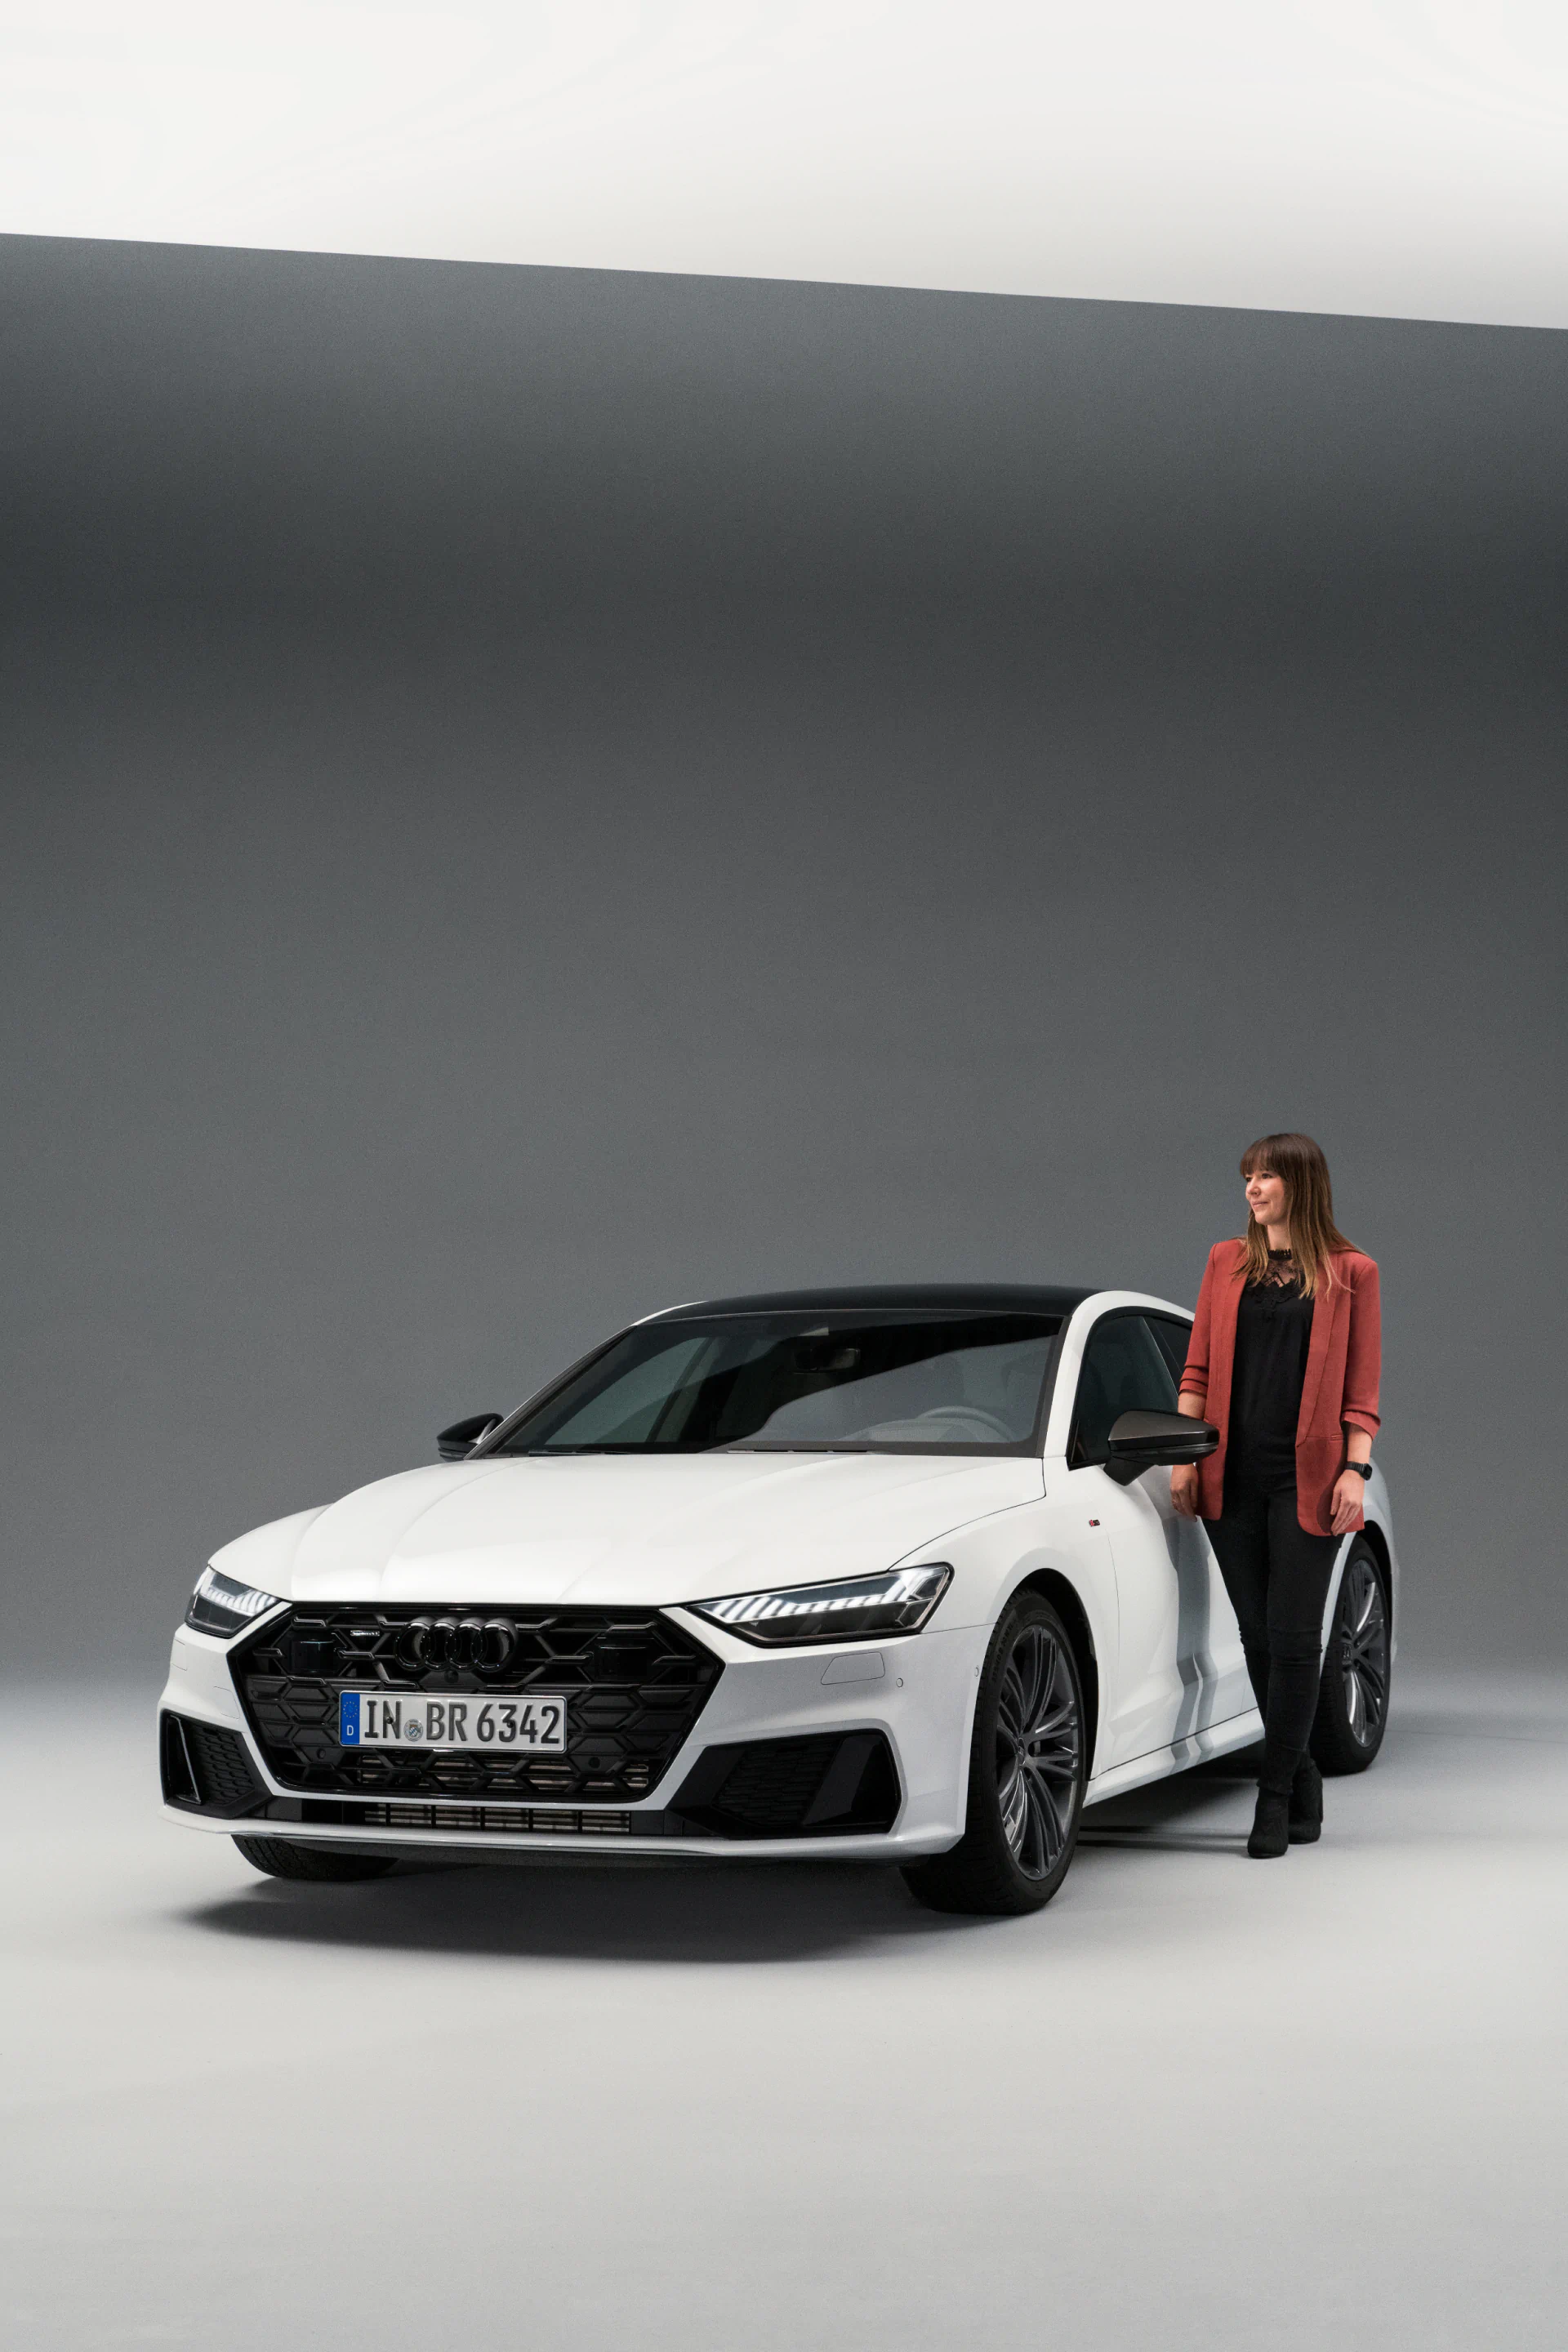 Stephanie Eckardt staat naast de nieuwe Audi A7 Sportback (niet leverbaar in Nederland).